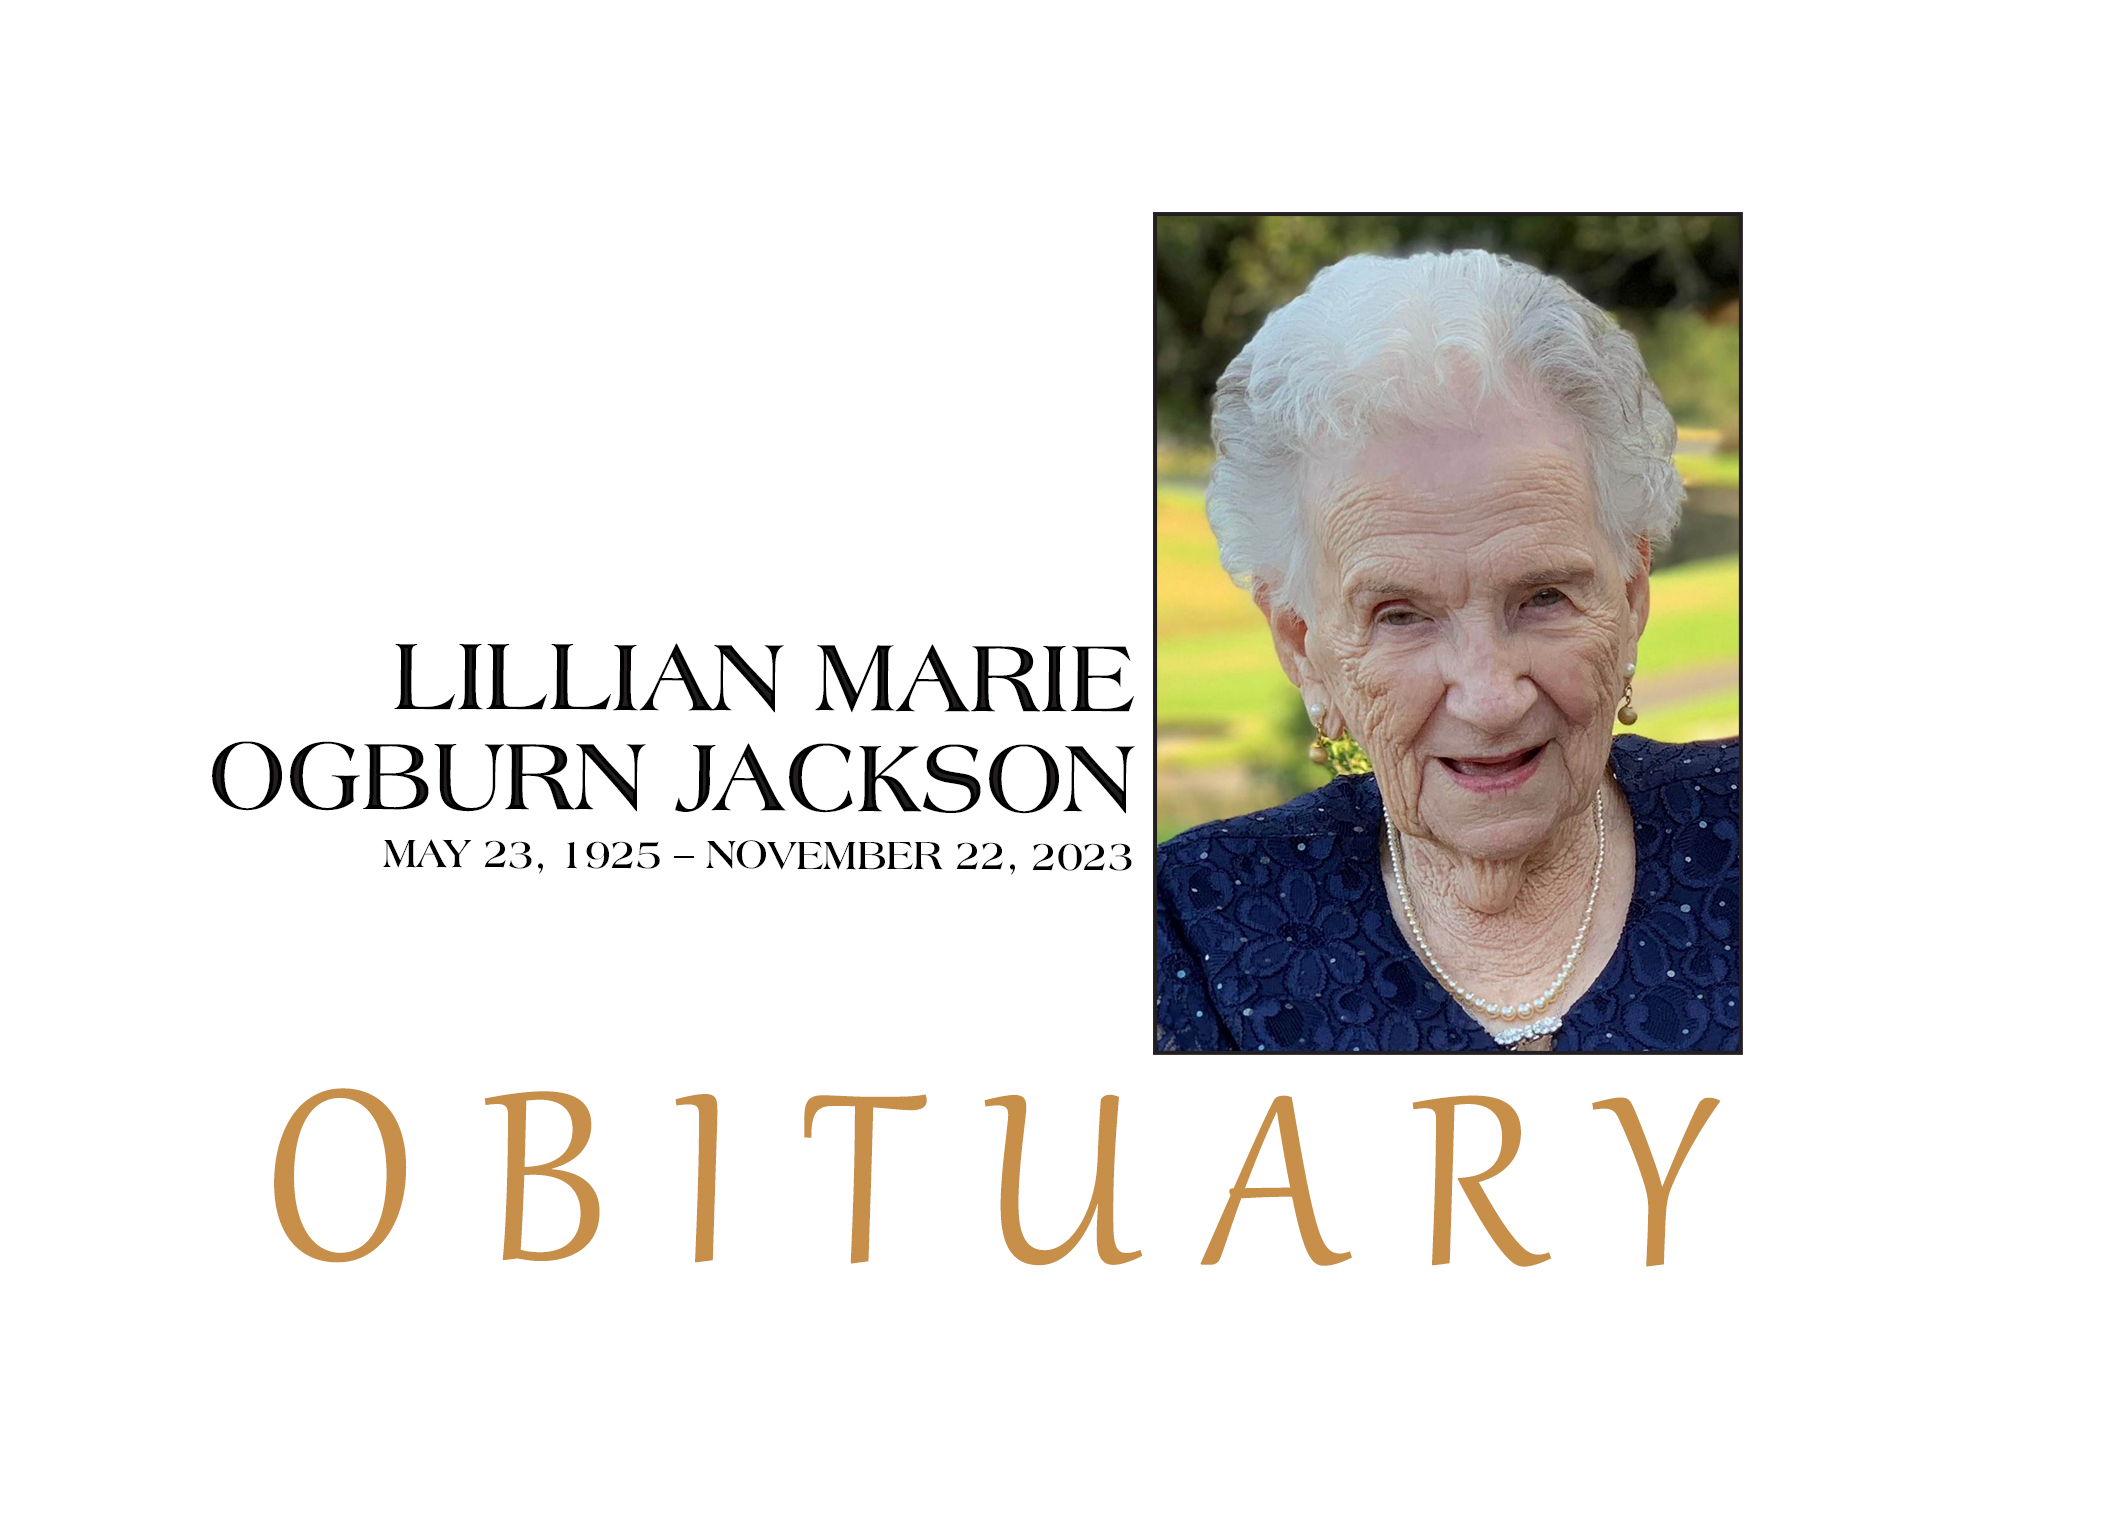 OBITUARY: LILLIAN MARIE OGBURN JACKSON